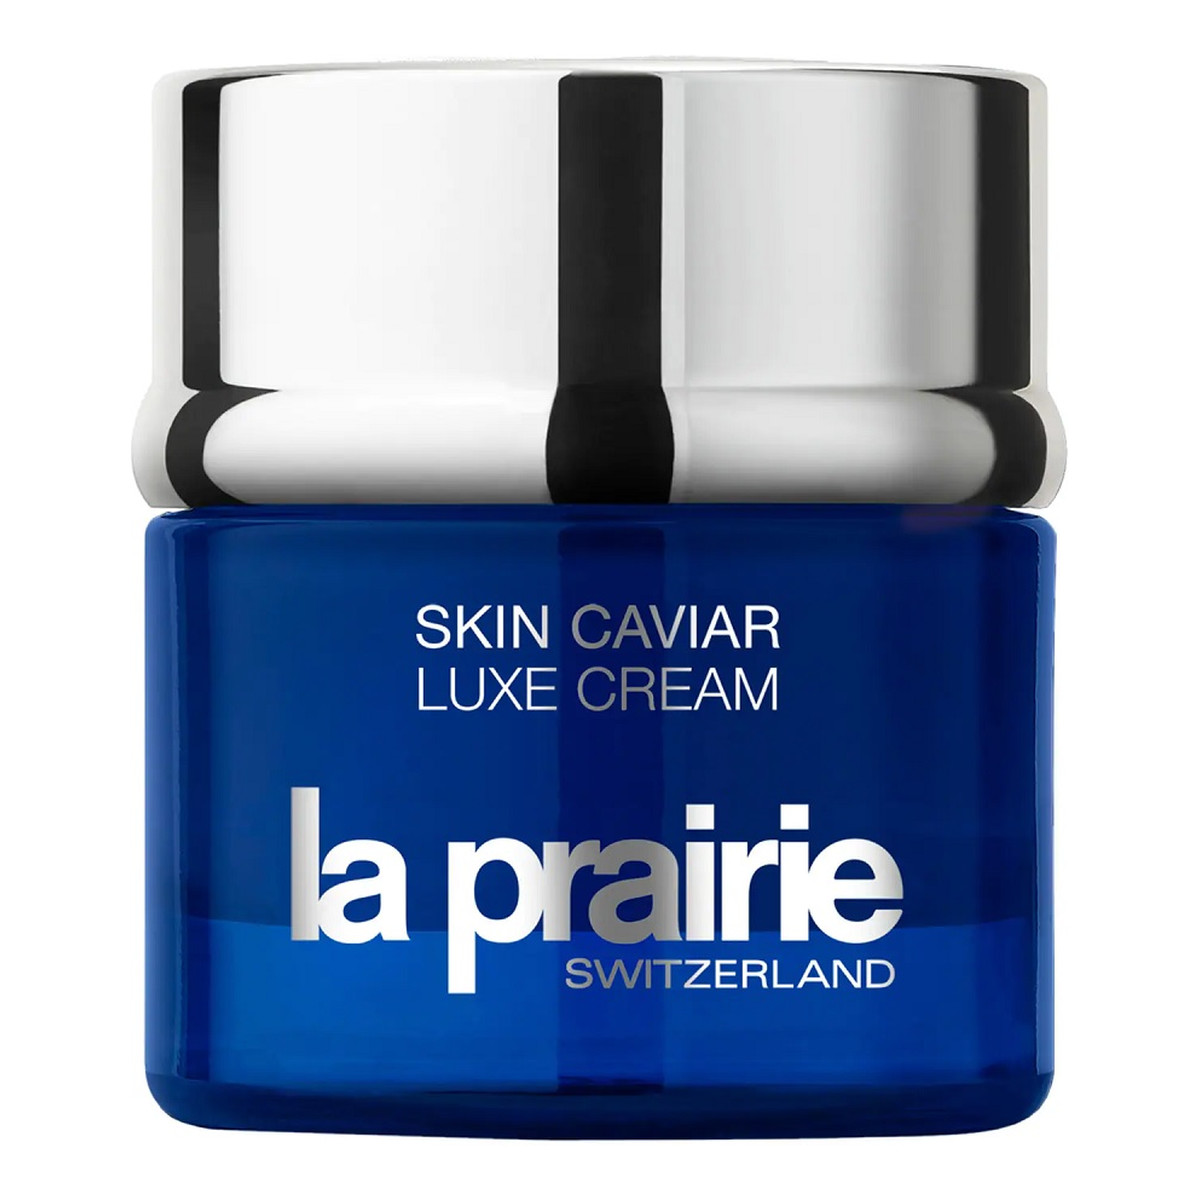 La Prairie Skin caviar luxe cream luksusowa kuracja kawiorowa o działaniu ujędrniającym do twarzy i szyi 50ml